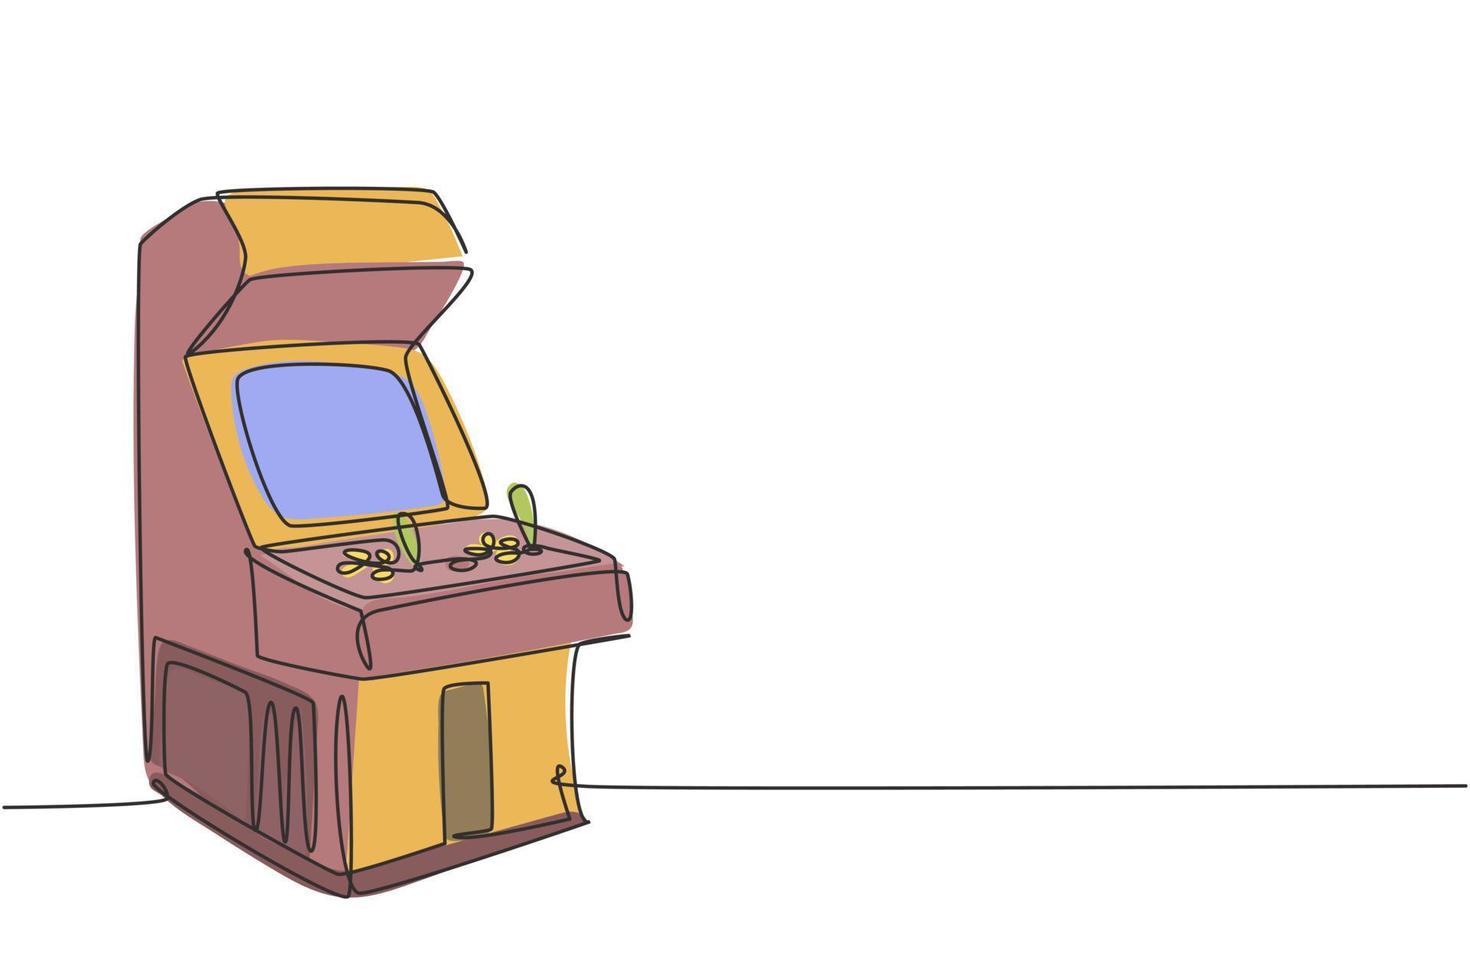 un dibujo de una sola línea de la vieja máquina de videojuegos arcade clásica retro en el centro de juegos. Concepto de juego de consola basado en monedas vintage ilustración de vector gráfico de diseño de dibujo de línea continua